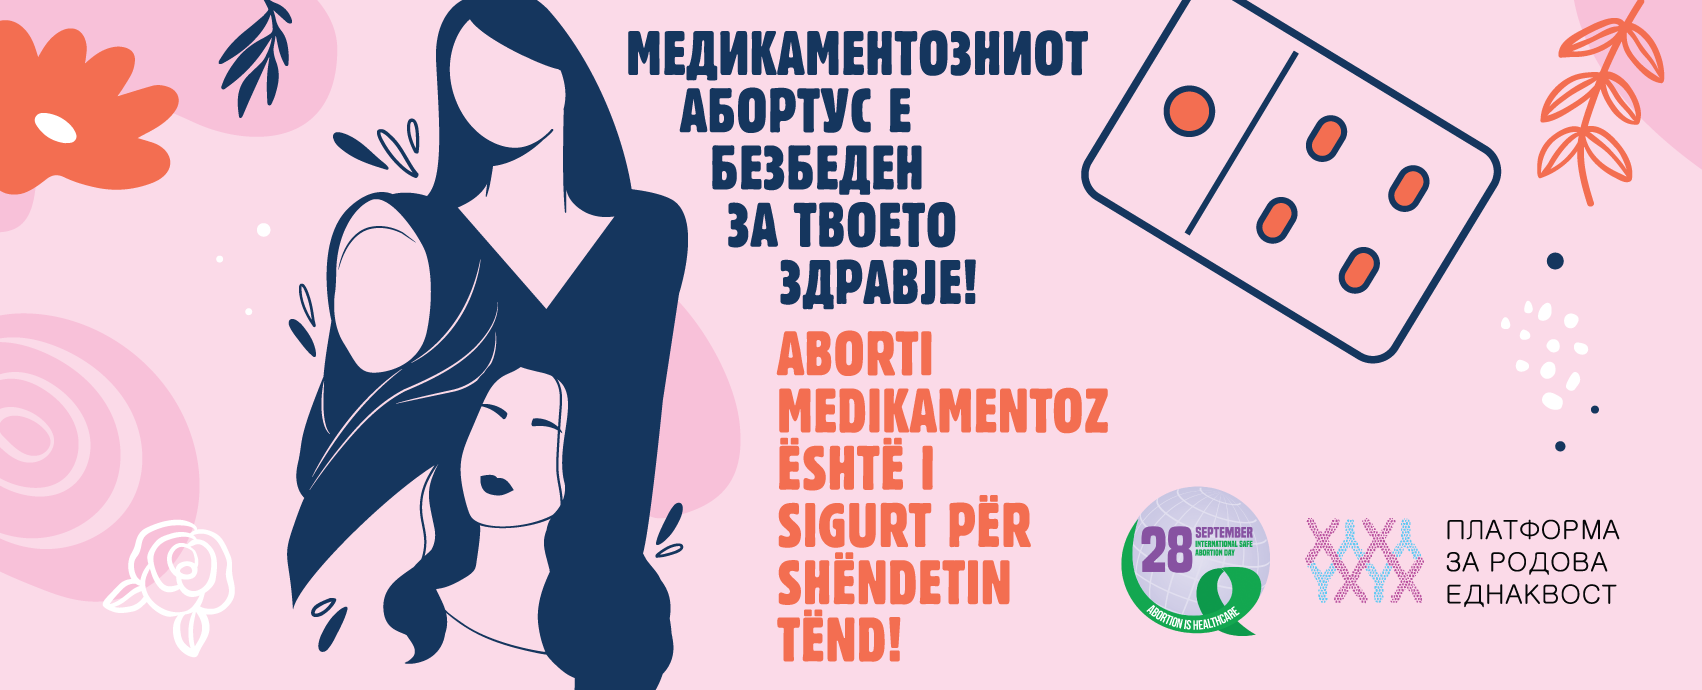 Platforma për barazi gjinore: Aborti i sigurt është mbrojtja themelore shëndetësore – dhe pikë!